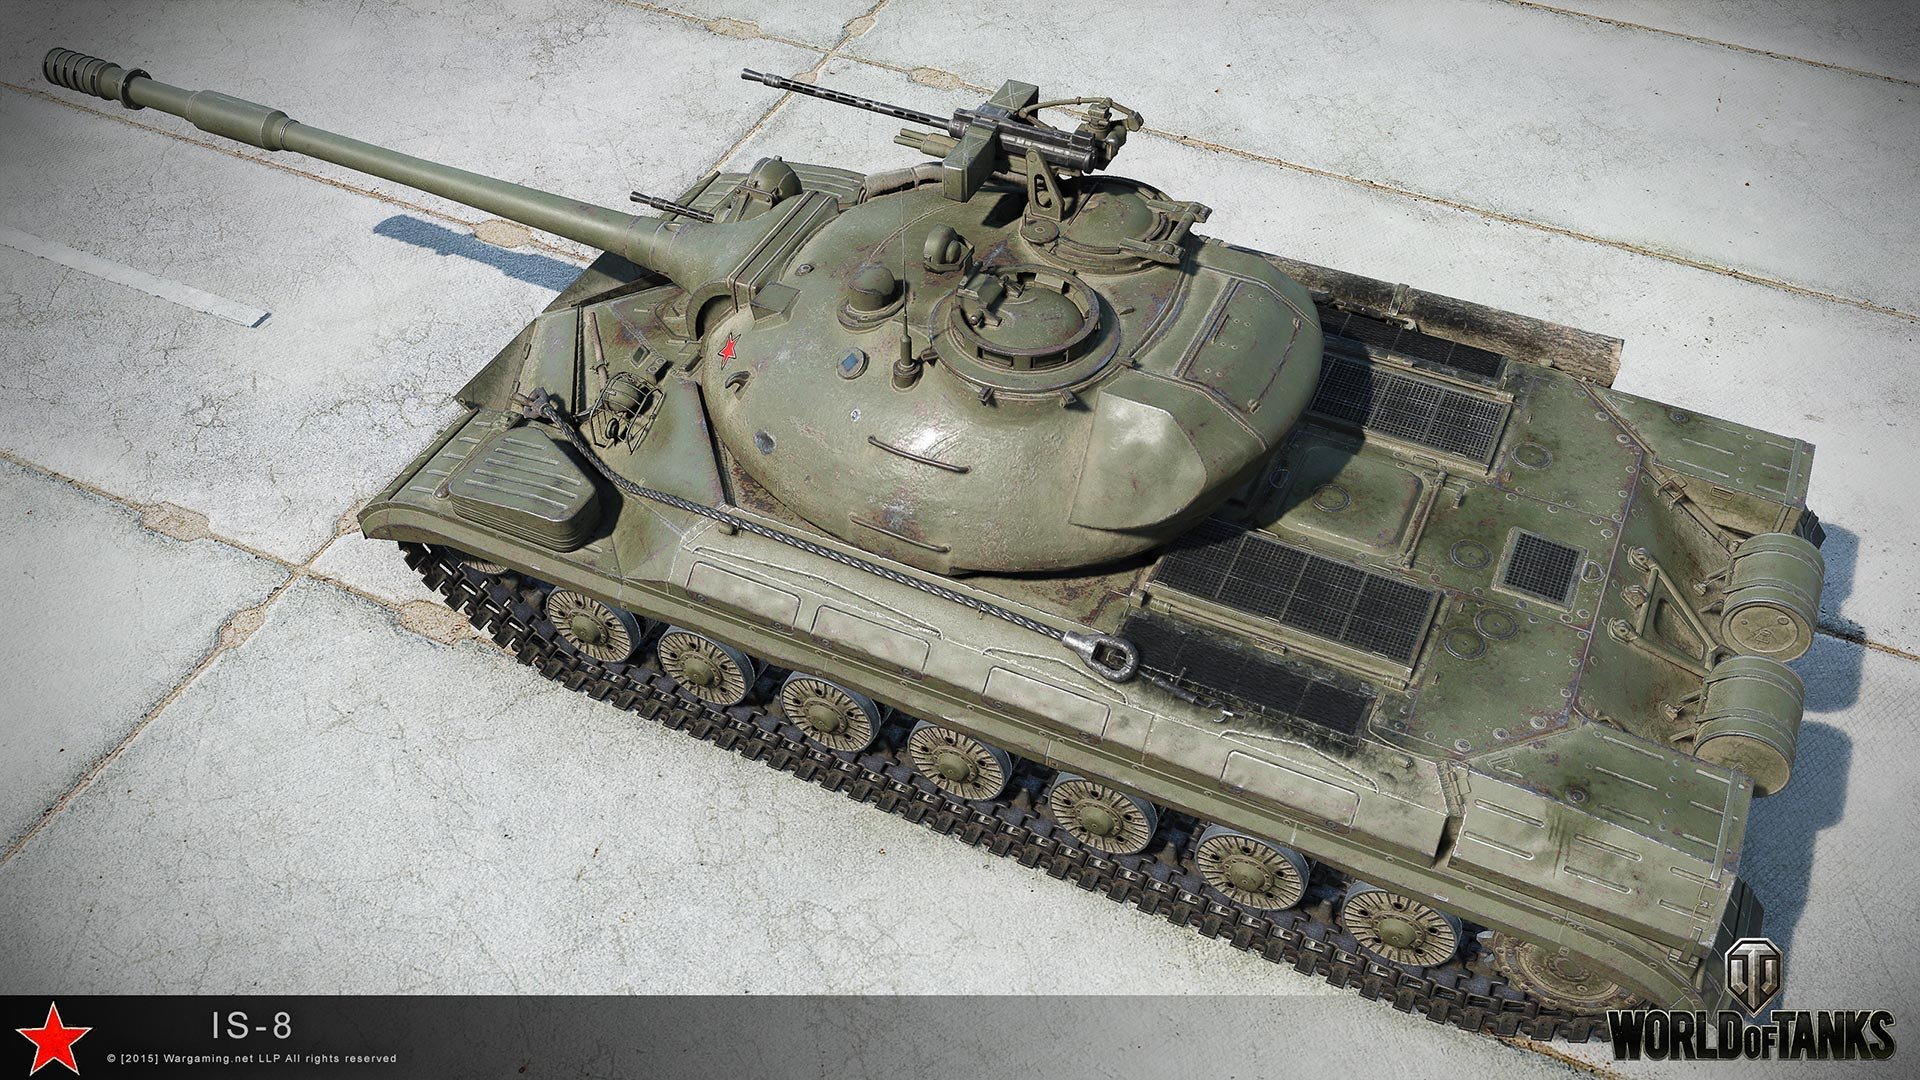 Танк ис т. Танк ИС 8. Т-10 танк СССР. Тяжелый танк т-10 (ИС-8). ИС-8 танк WOT.